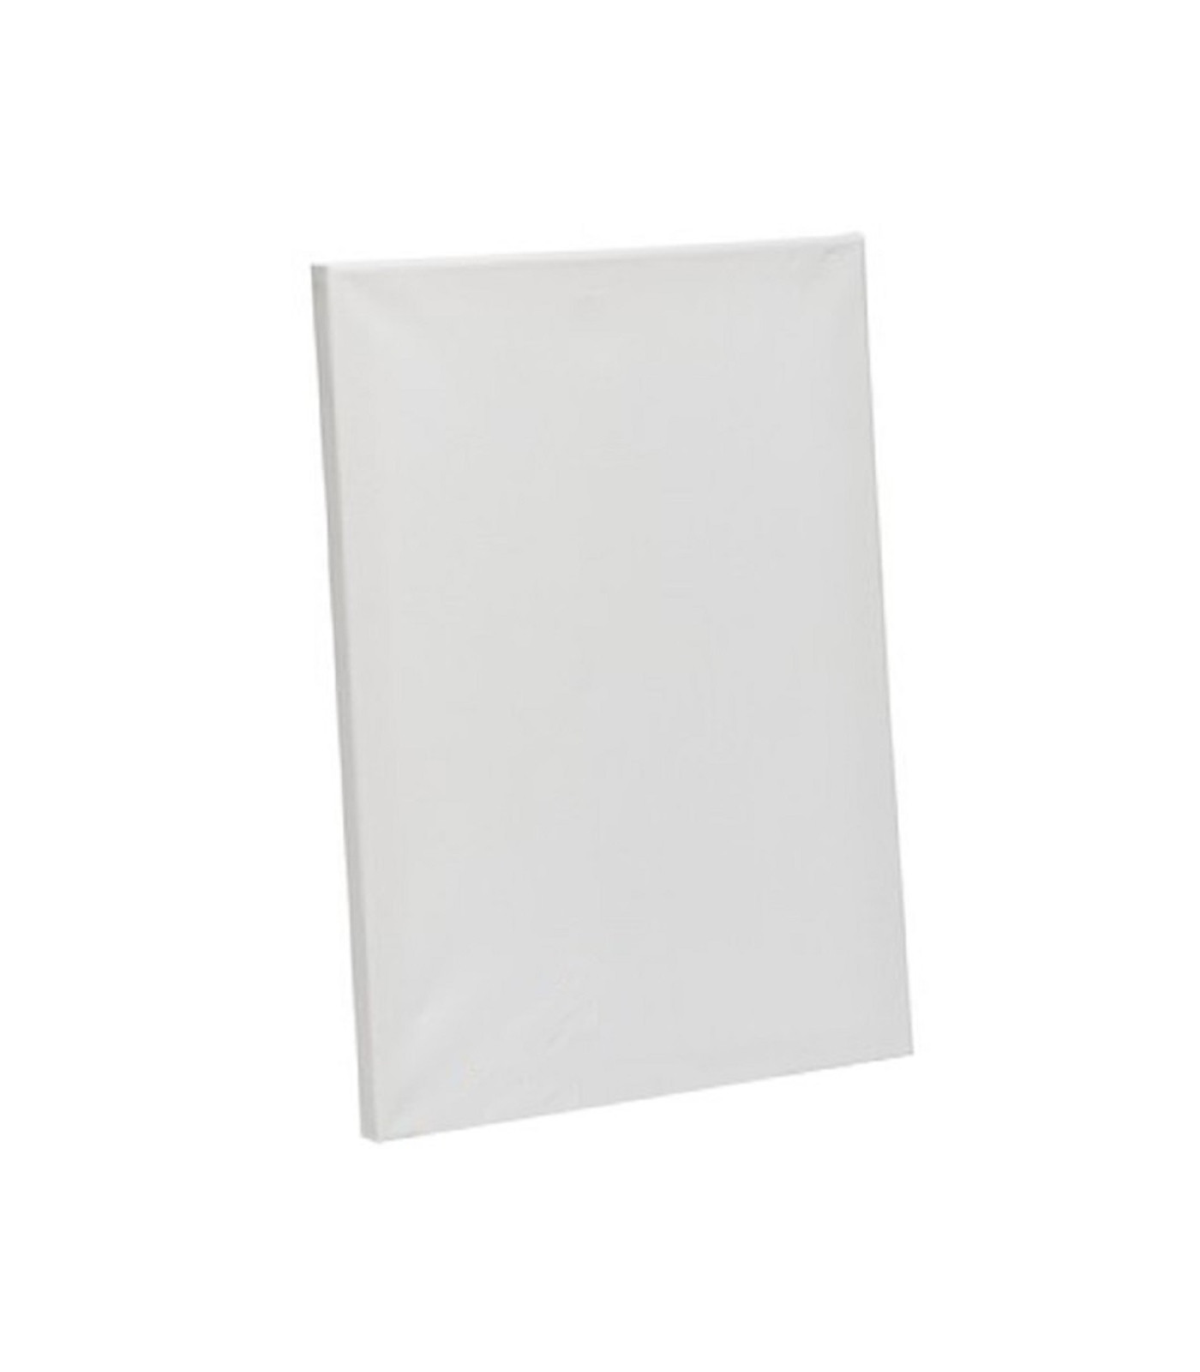 Lienzo Grande en Blanco para Pintar 100 x 100 x 3.4 cm, 100% algodón.  Válido para todo tipo de pinturas: acrílica, óleo, acuarela Indicado para  amantes de la pintura y profesionales. 